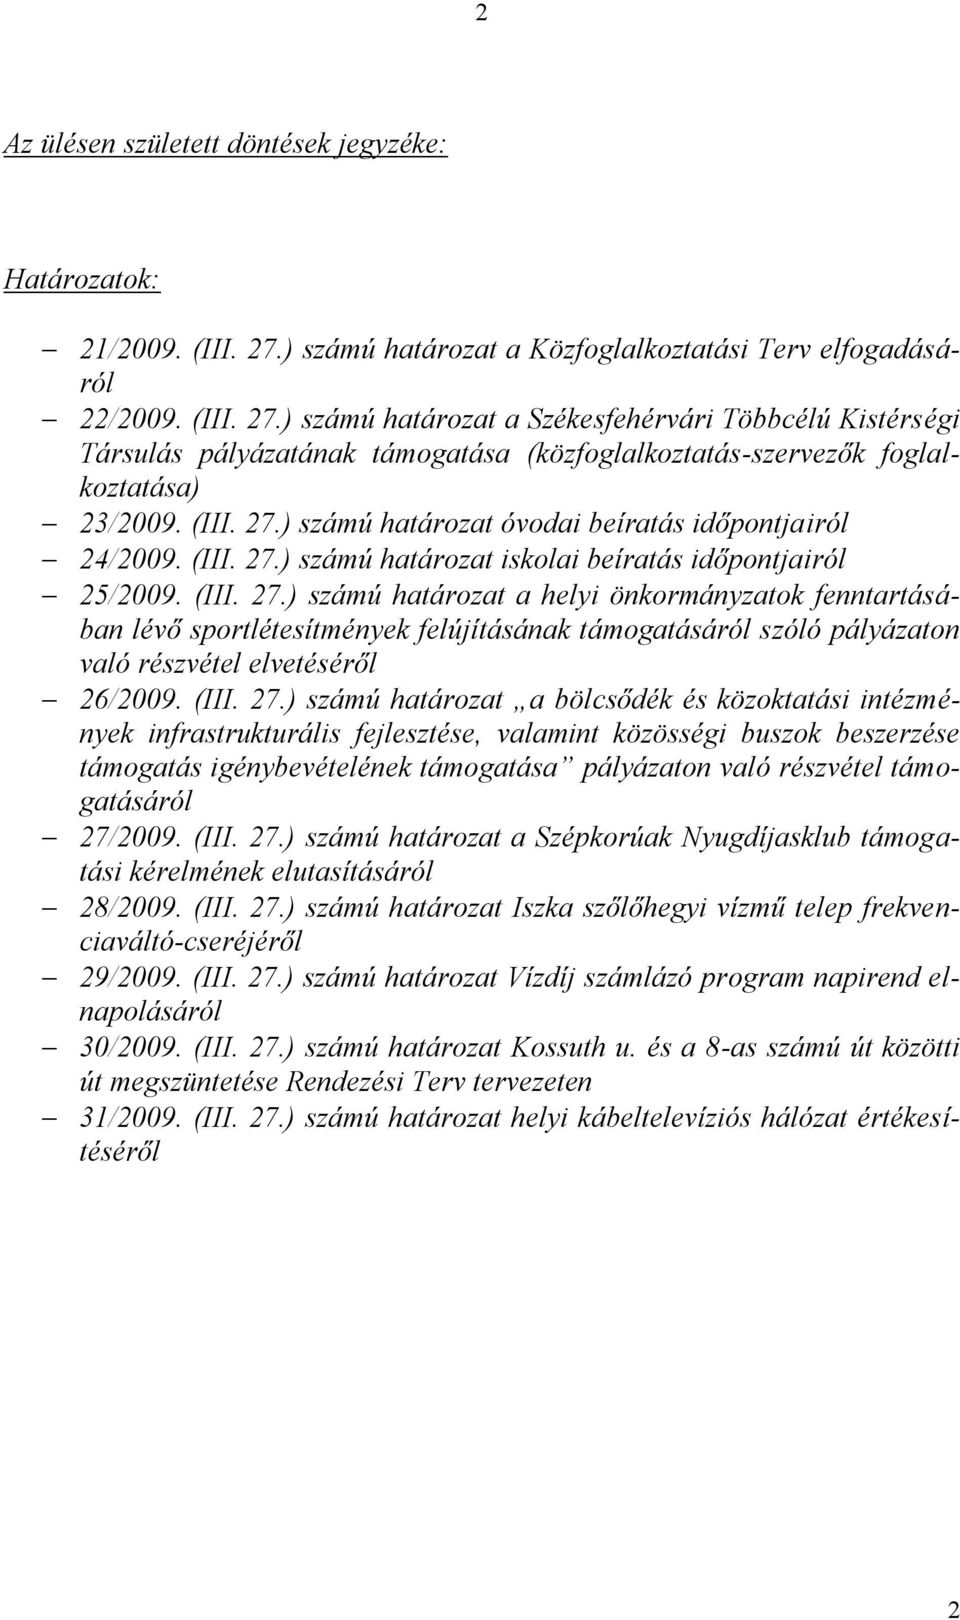 ) számú határozat a Székesfehérvári Többcélú Kistérségi Társulás pályázatának támogatása (közfoglalkoztatás-szervezők foglalkoztatása) 23/2009. (III. 27.